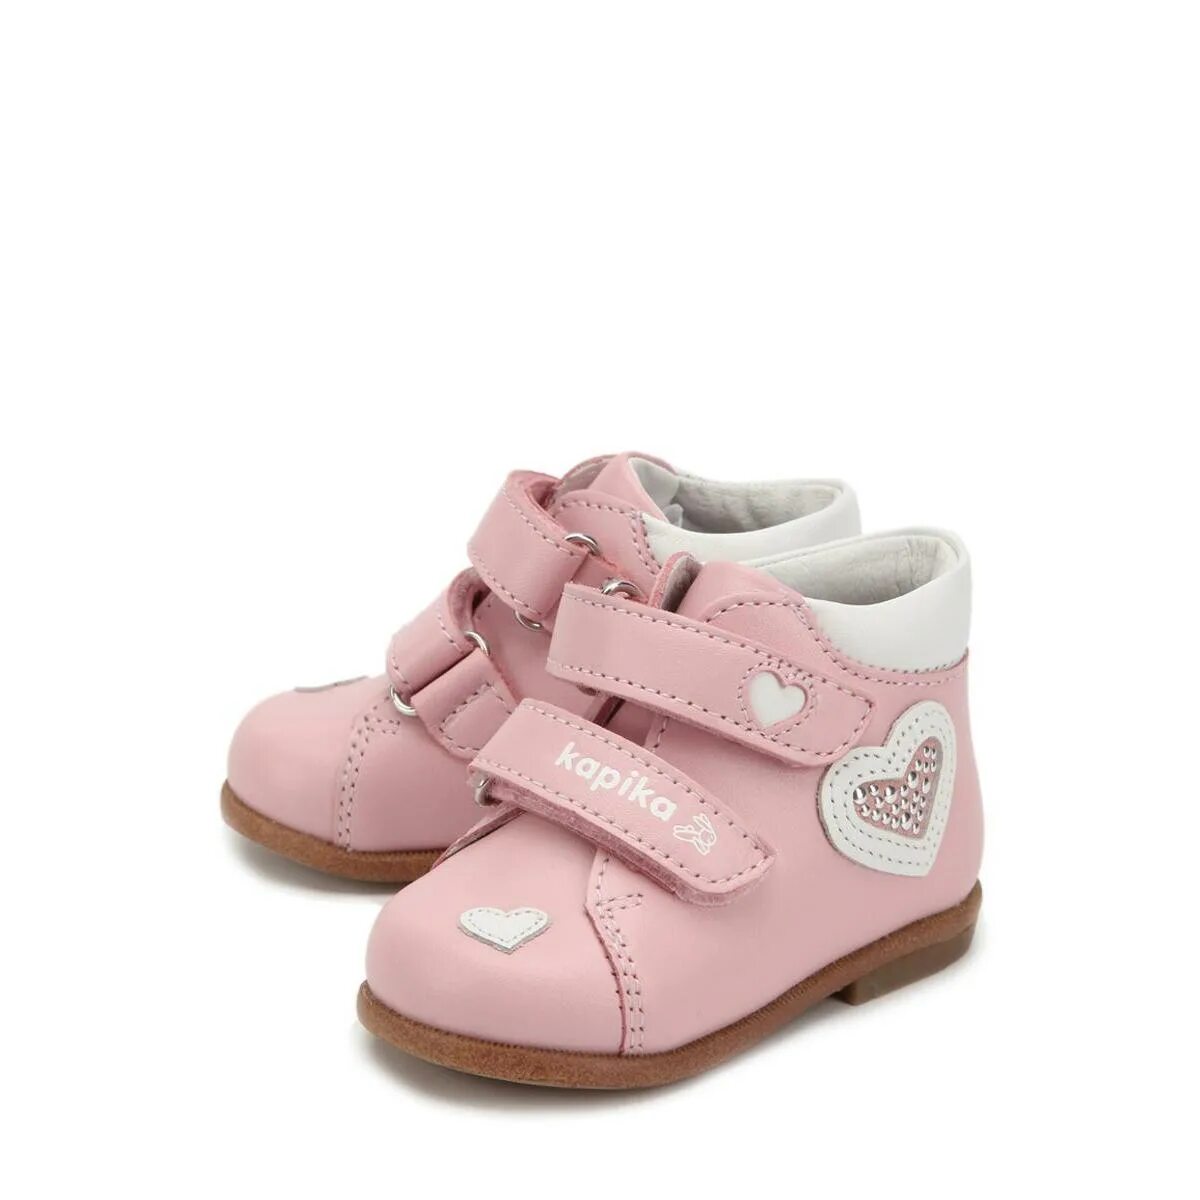 Кожаные ботинки для девочки Капика 2021. Детская обувь Nimco ботинки. EASYGO обувь детская ботинки. Ботиночки для малышей до года. Хорошая детская обувь фирмы